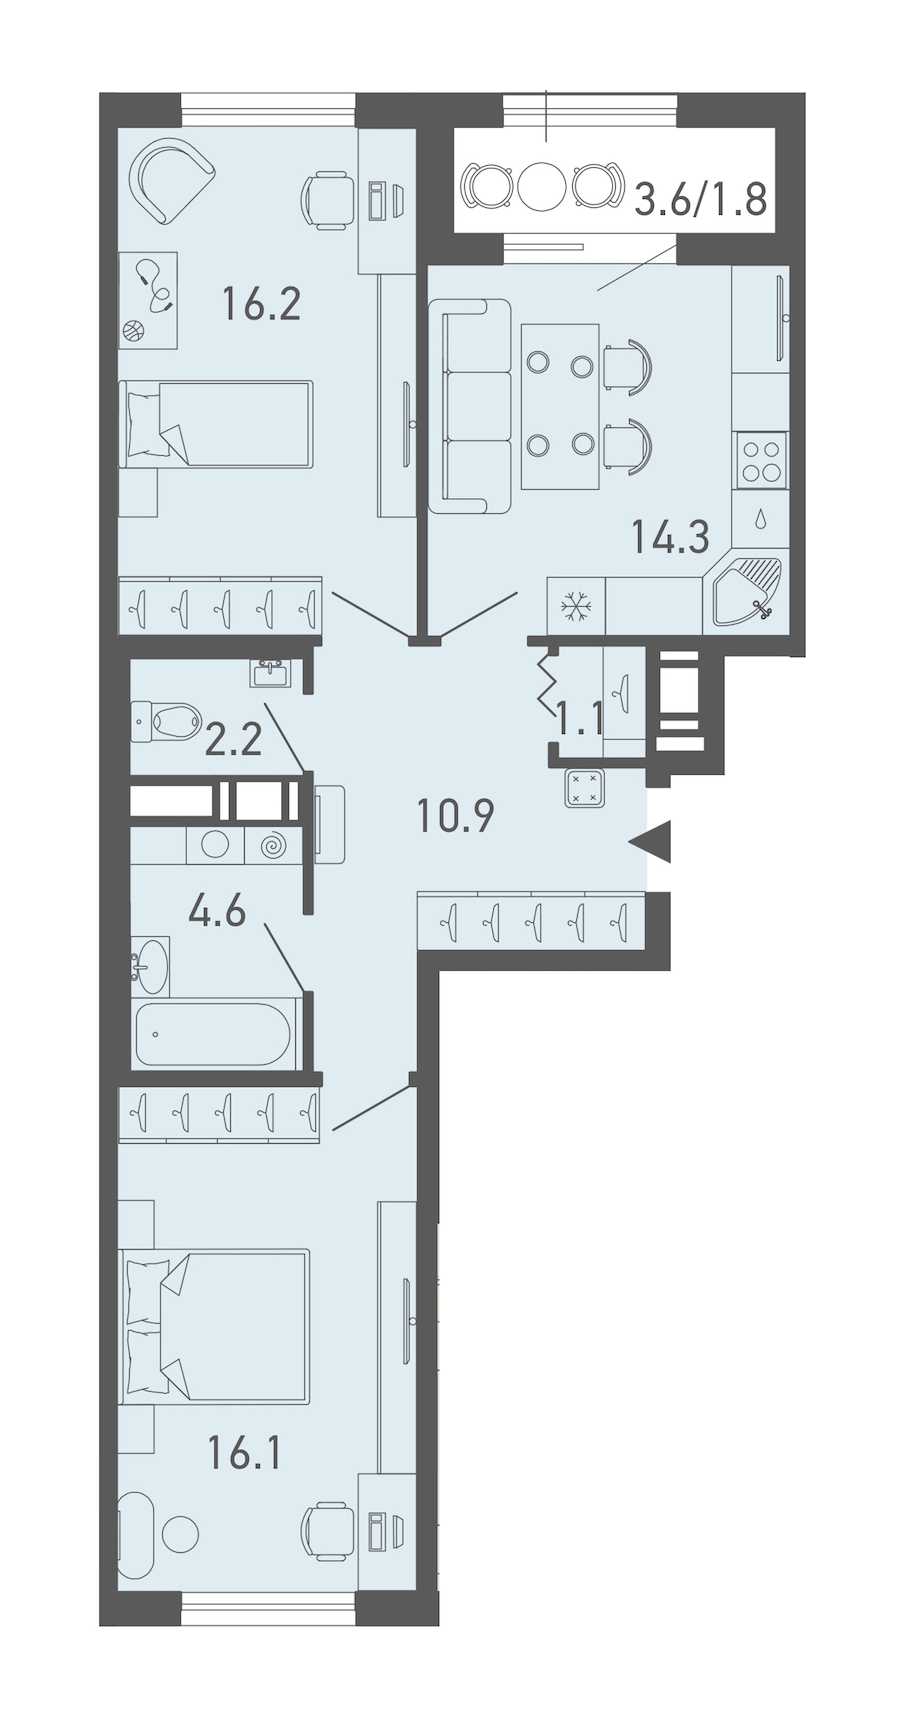 Двухкомнатная квартира в Эталон ЛенСпецСМУ: площадь 67.2 м2 , этаж: 13 – купить в Санкт-Петербурге